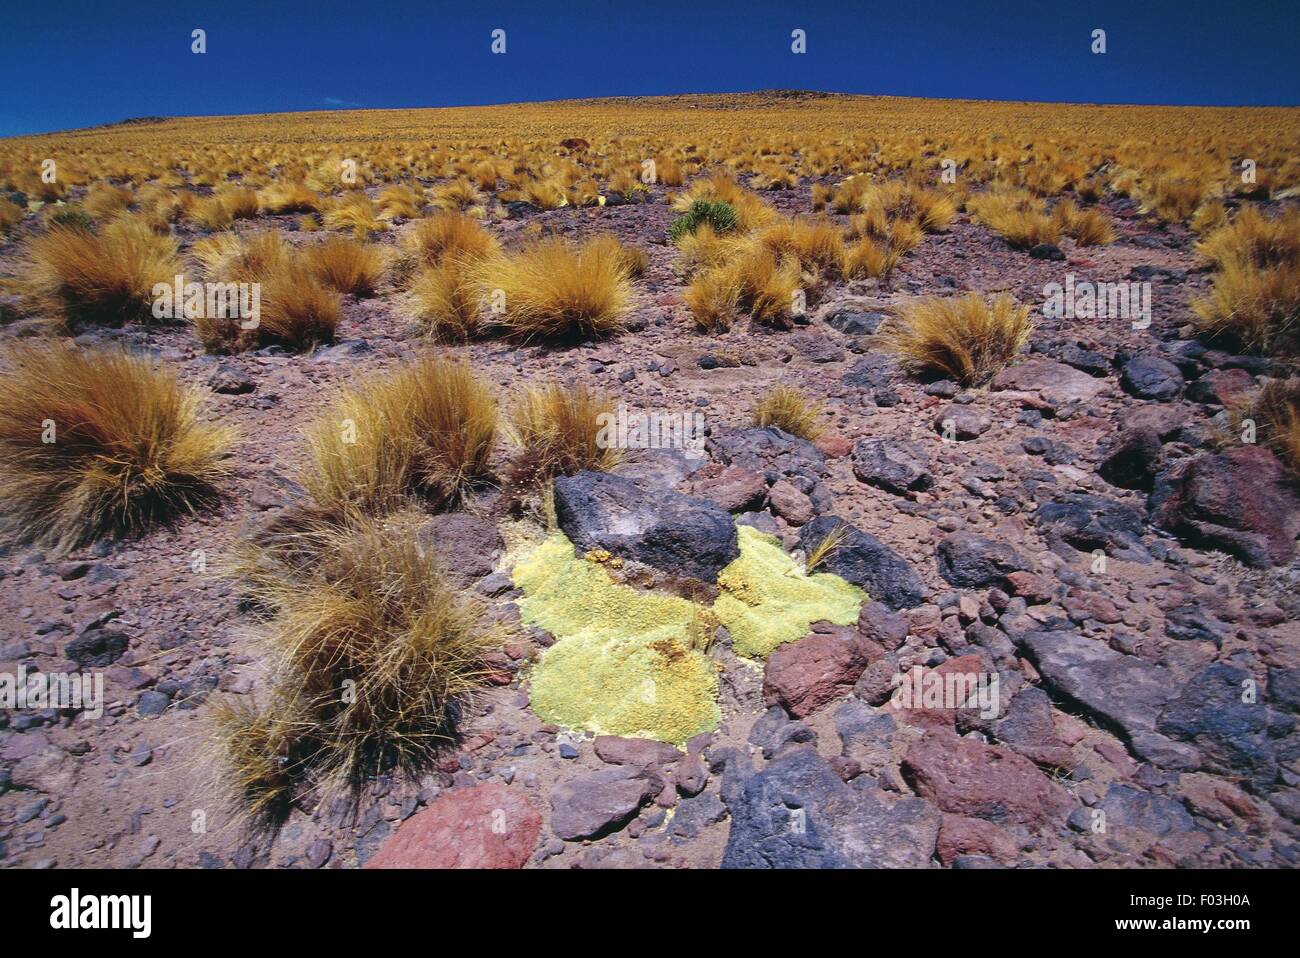 Chile, Norte Grande, Antofagasta Region. Atacama Desert, 'coiron' bushes at the Viscacha Pass. Stock Photo